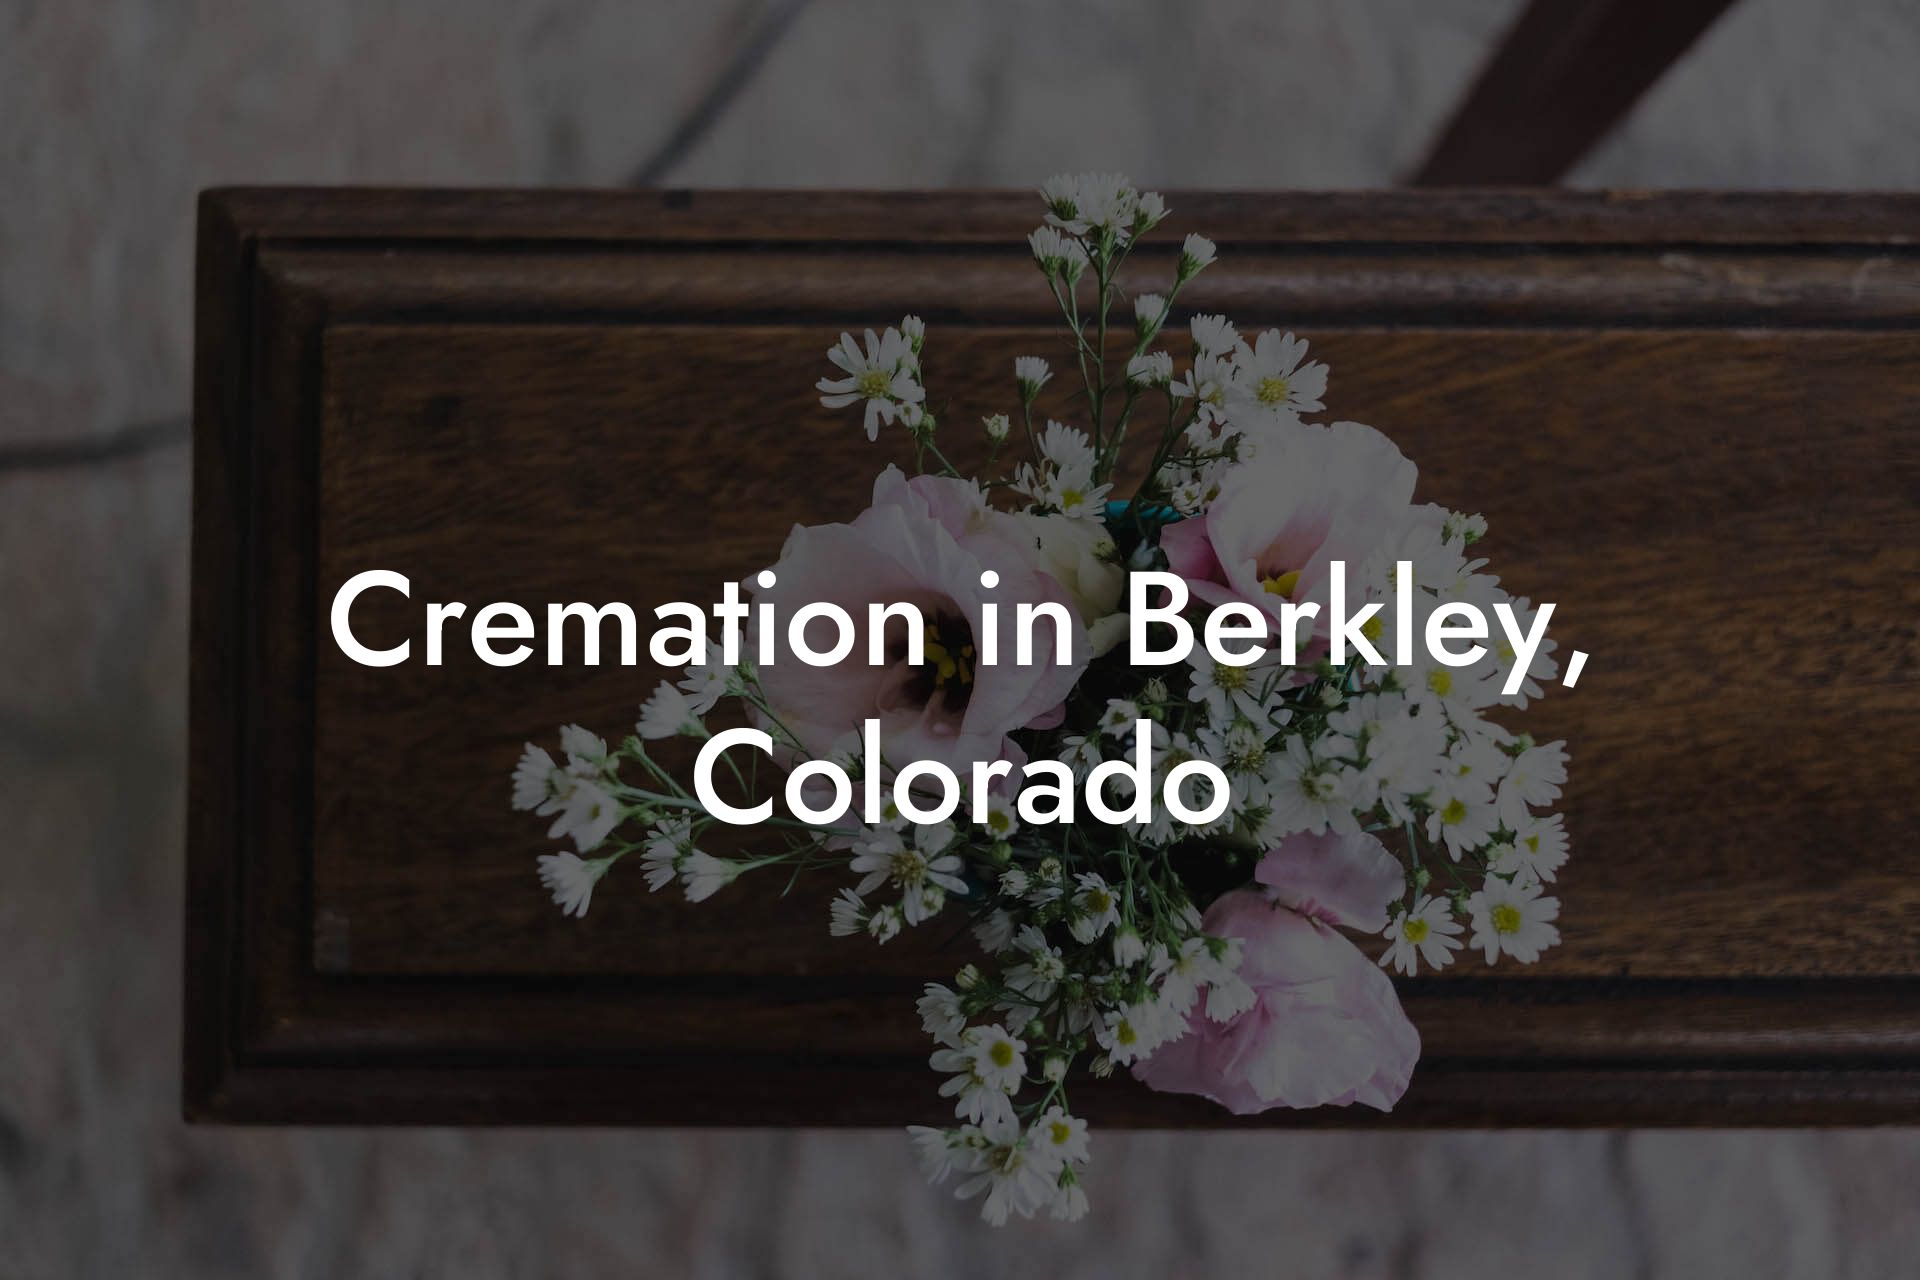 Cremation in Berkley, Colorado